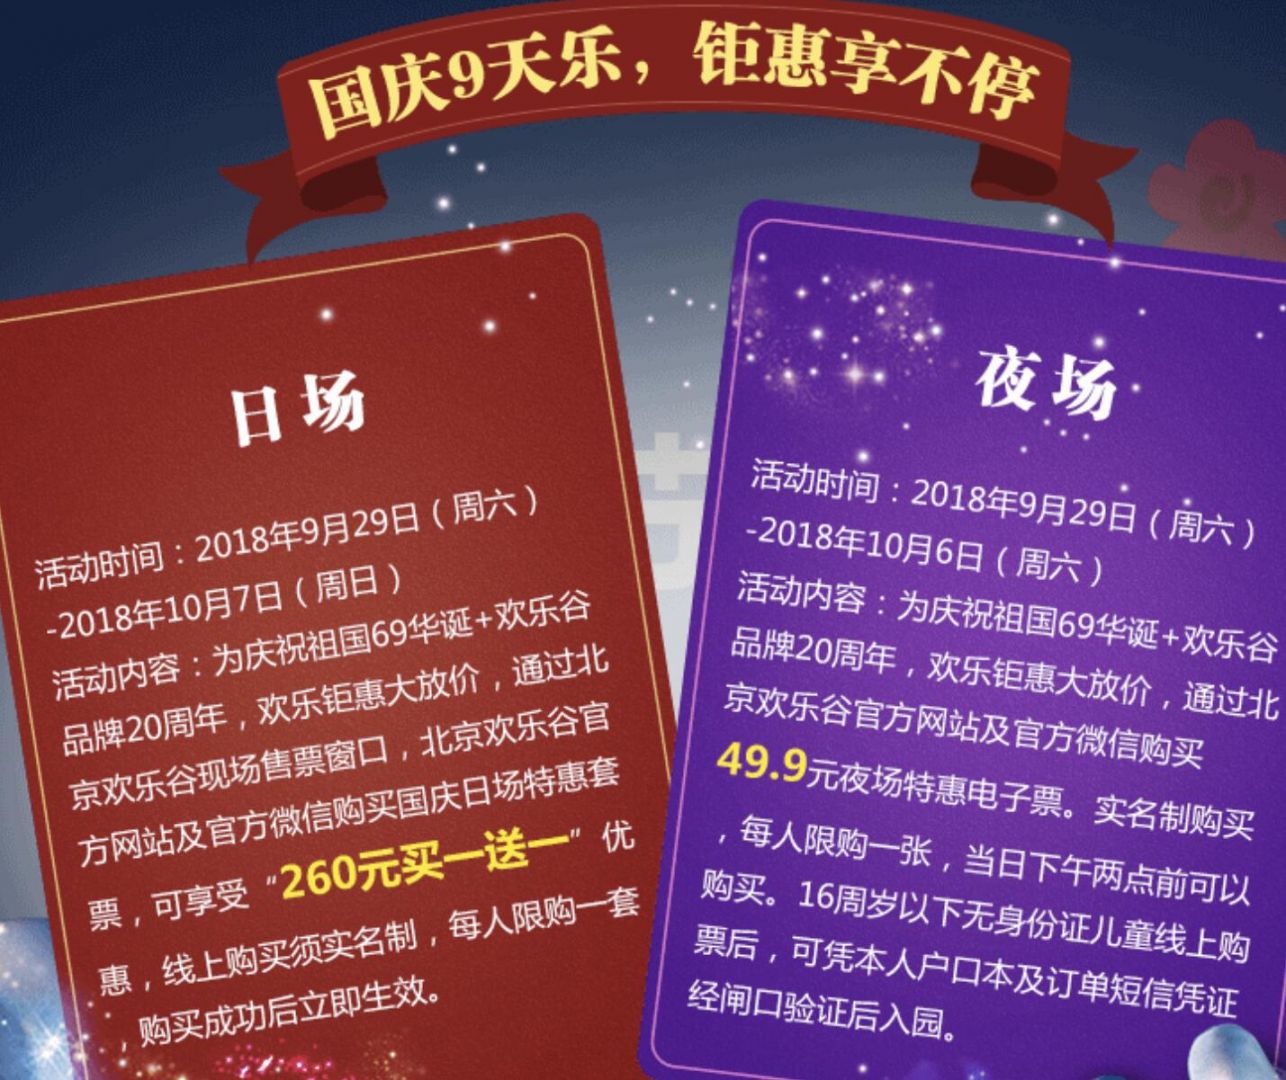 2018十一国庆北京欢乐谷活动门票价格(附微信